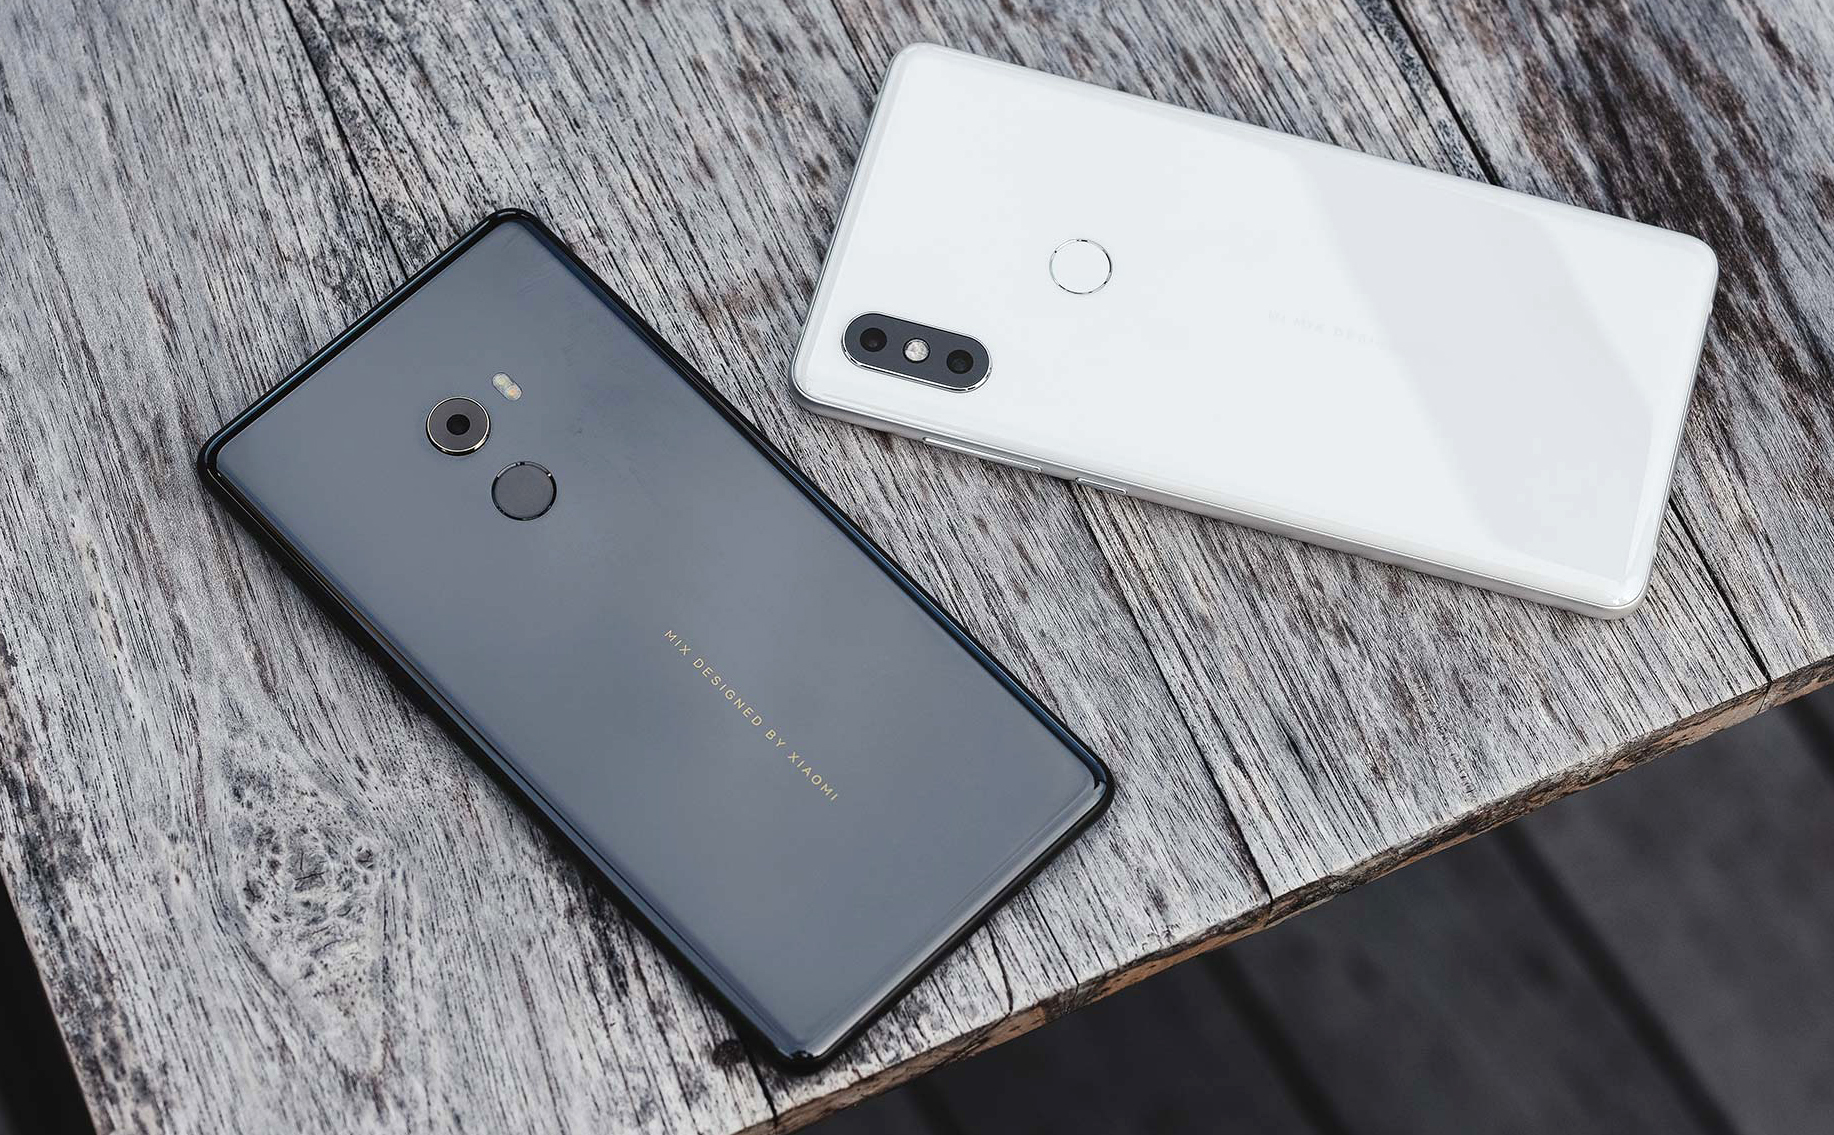 Xiaomi Q1/2018: mảng smartphone tăng trưởng mạnh nhưng vẫn thua lỗ